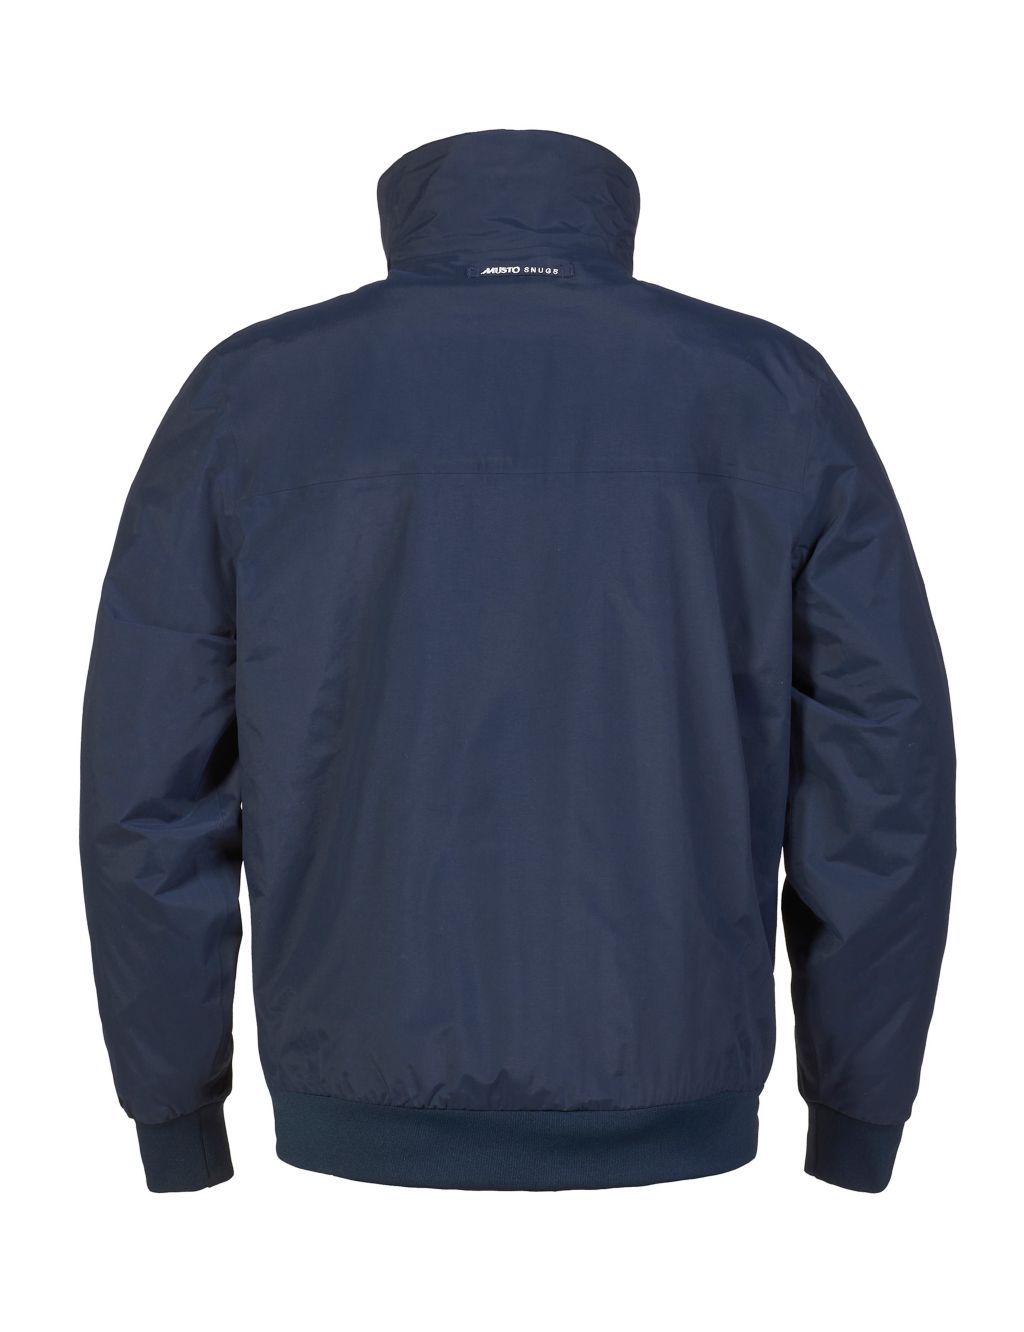 Snug Fleece Lined Jacket image 5